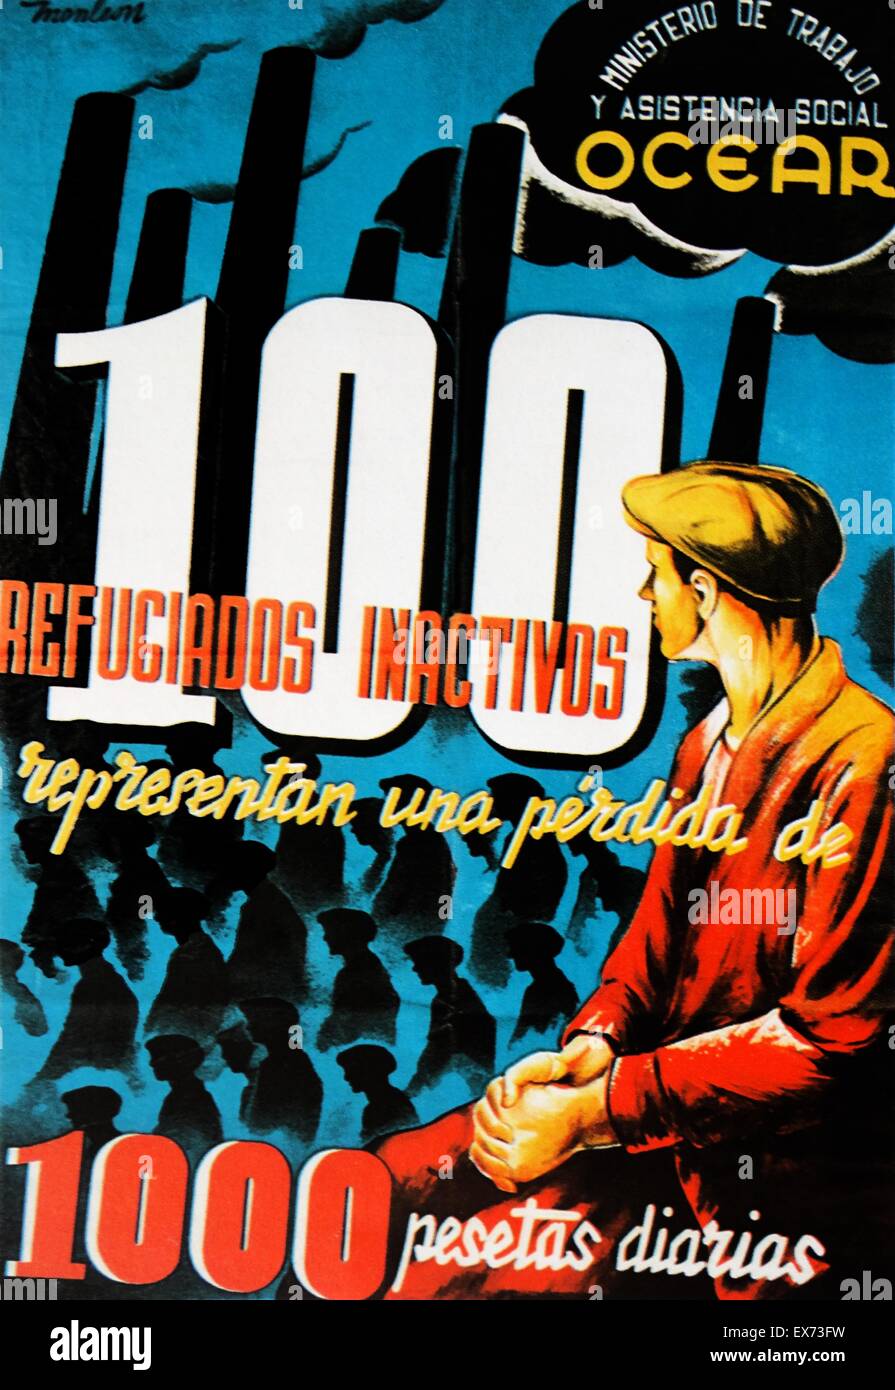 Affiche républicaine qui souligne le coût à l'Espagne des réfugiés de quitter l'économie de guerre, pendant la guerre civile espagnole Banque D'Images